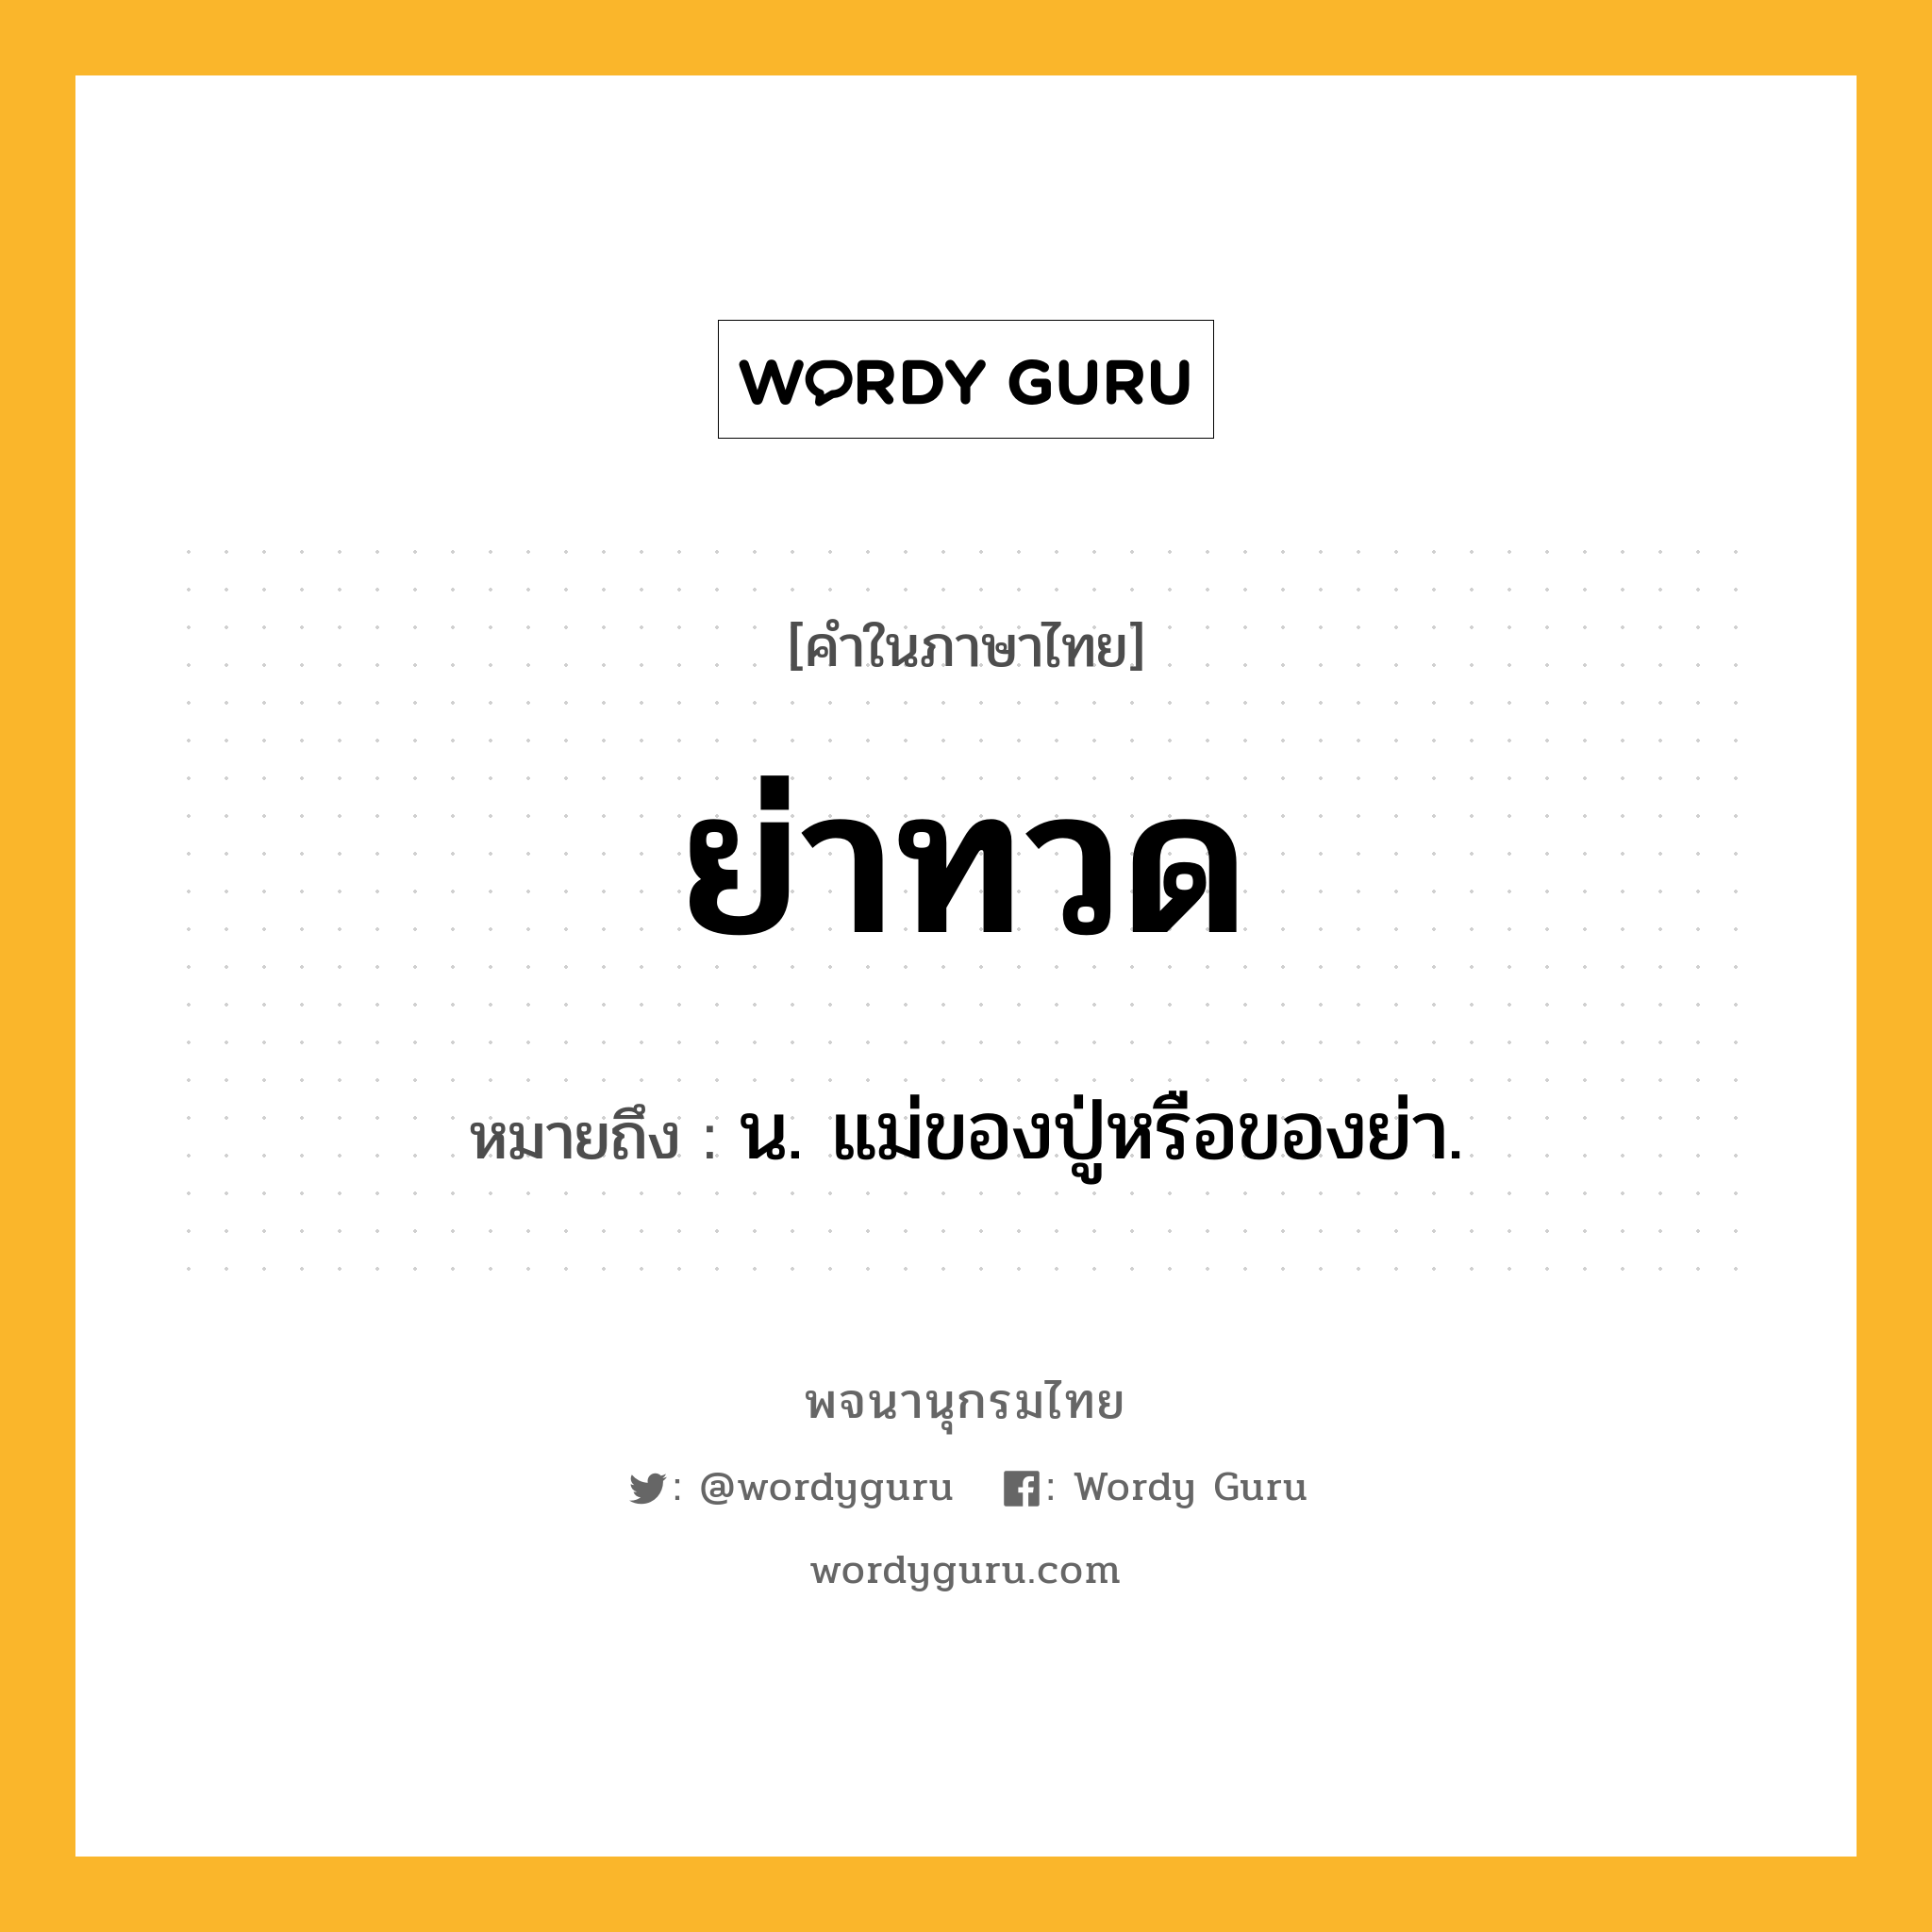 ย่าทวด ความหมาย หมายถึงอะไร?, คำในภาษาไทย ย่าทวด หมายถึง น. แม่ของปู่หรือของย่า.